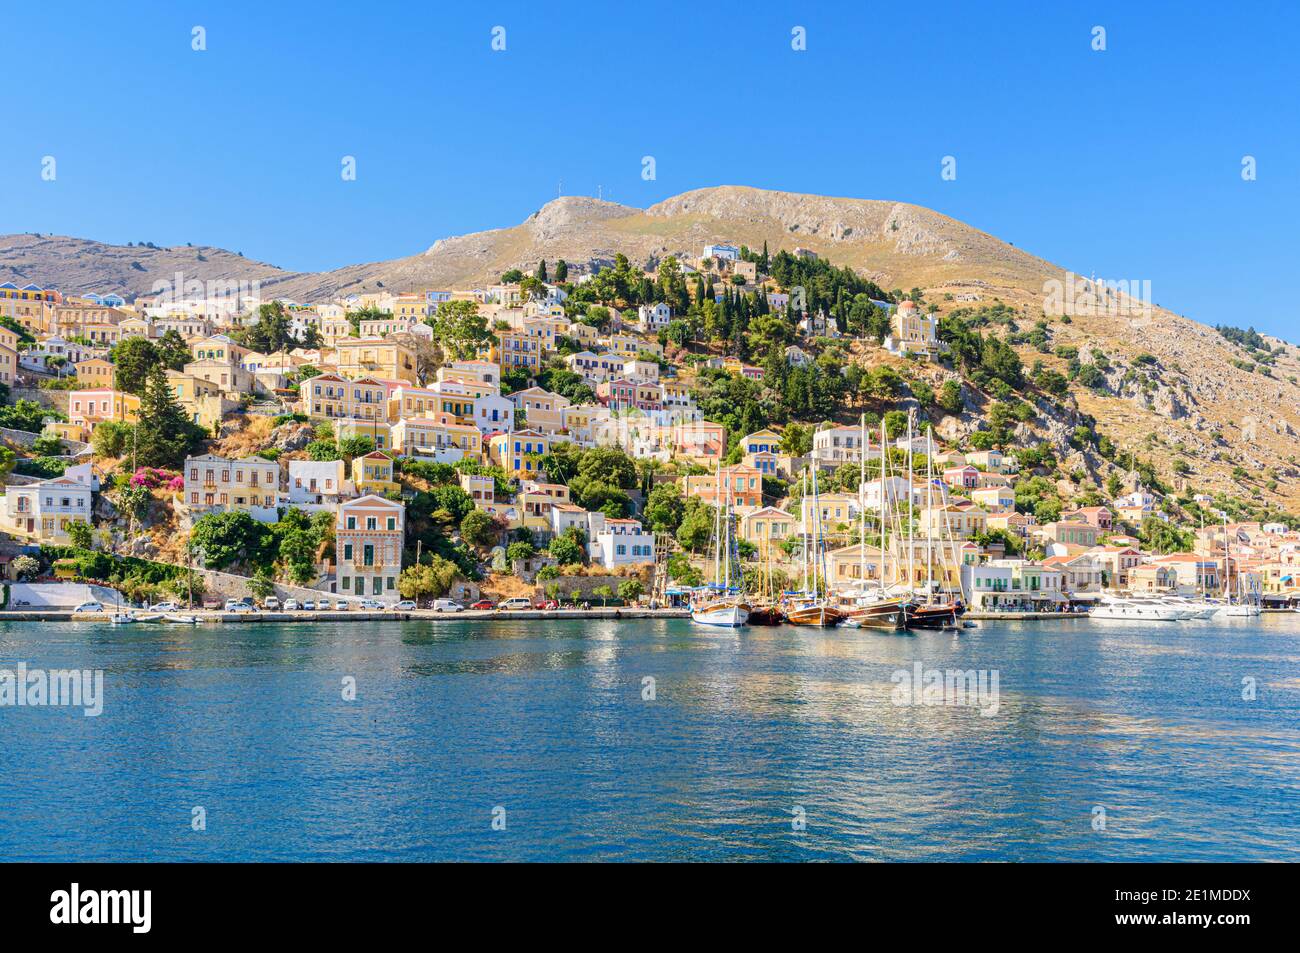 Symi Island Blick auf Boote, die an der Küste von Gialos Town auf der Insel Symi, Dodekanes, Griechenland, festgemacht sind Stockfoto